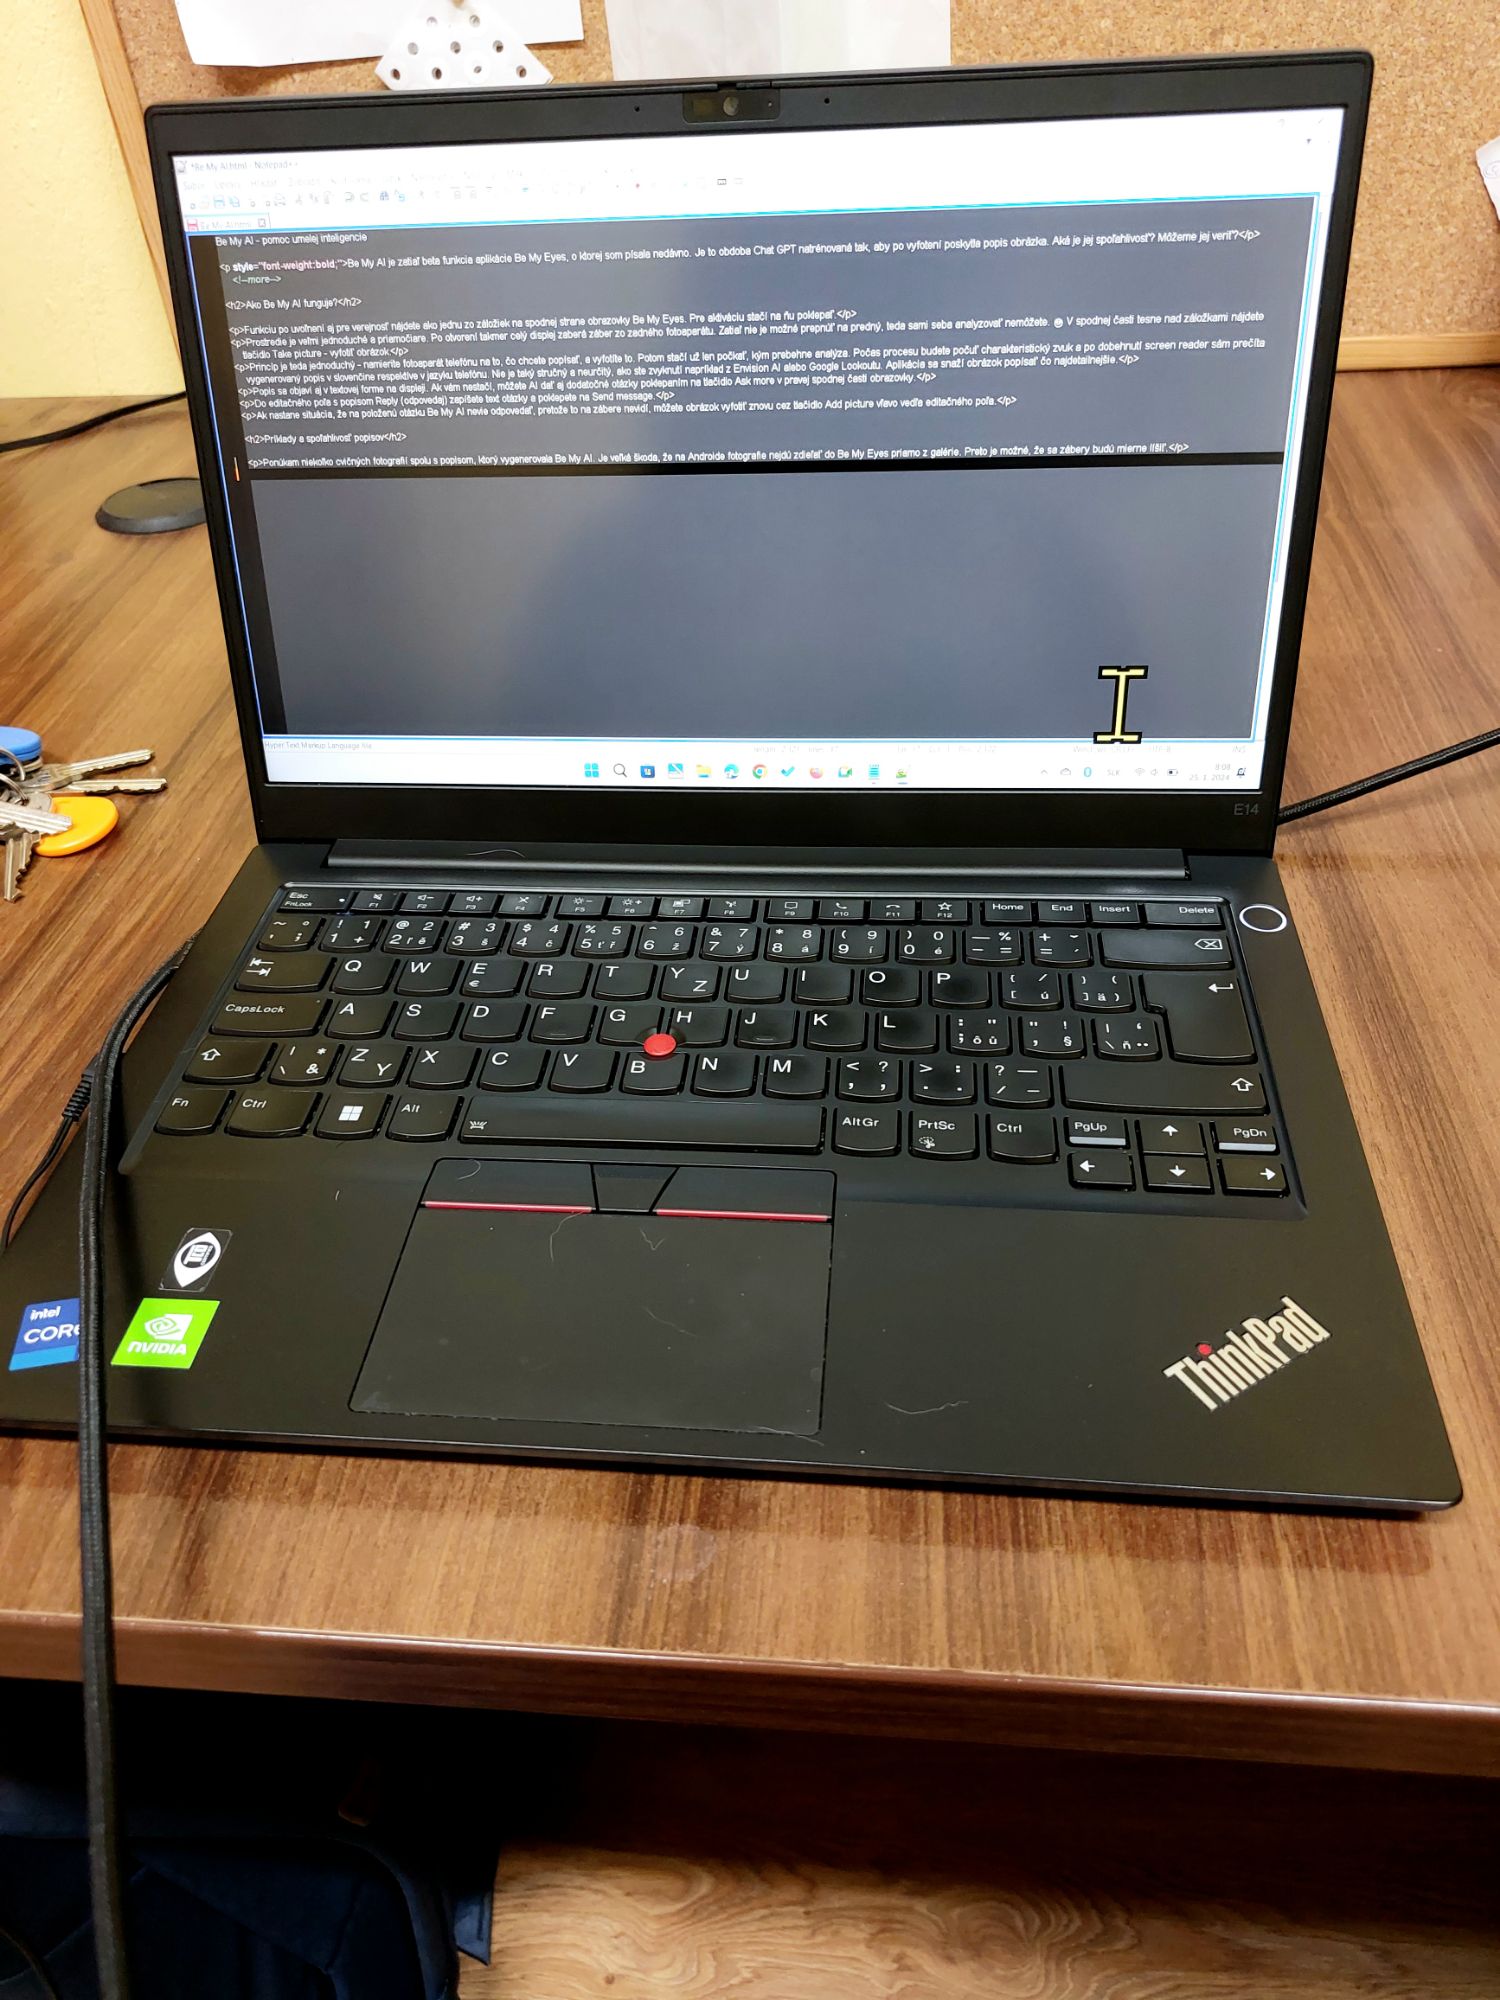 Čierny notebook položený na hnedom drevenom stole, na ktorého displeji je otvorený Notepad++ s článkom o Be My AI.